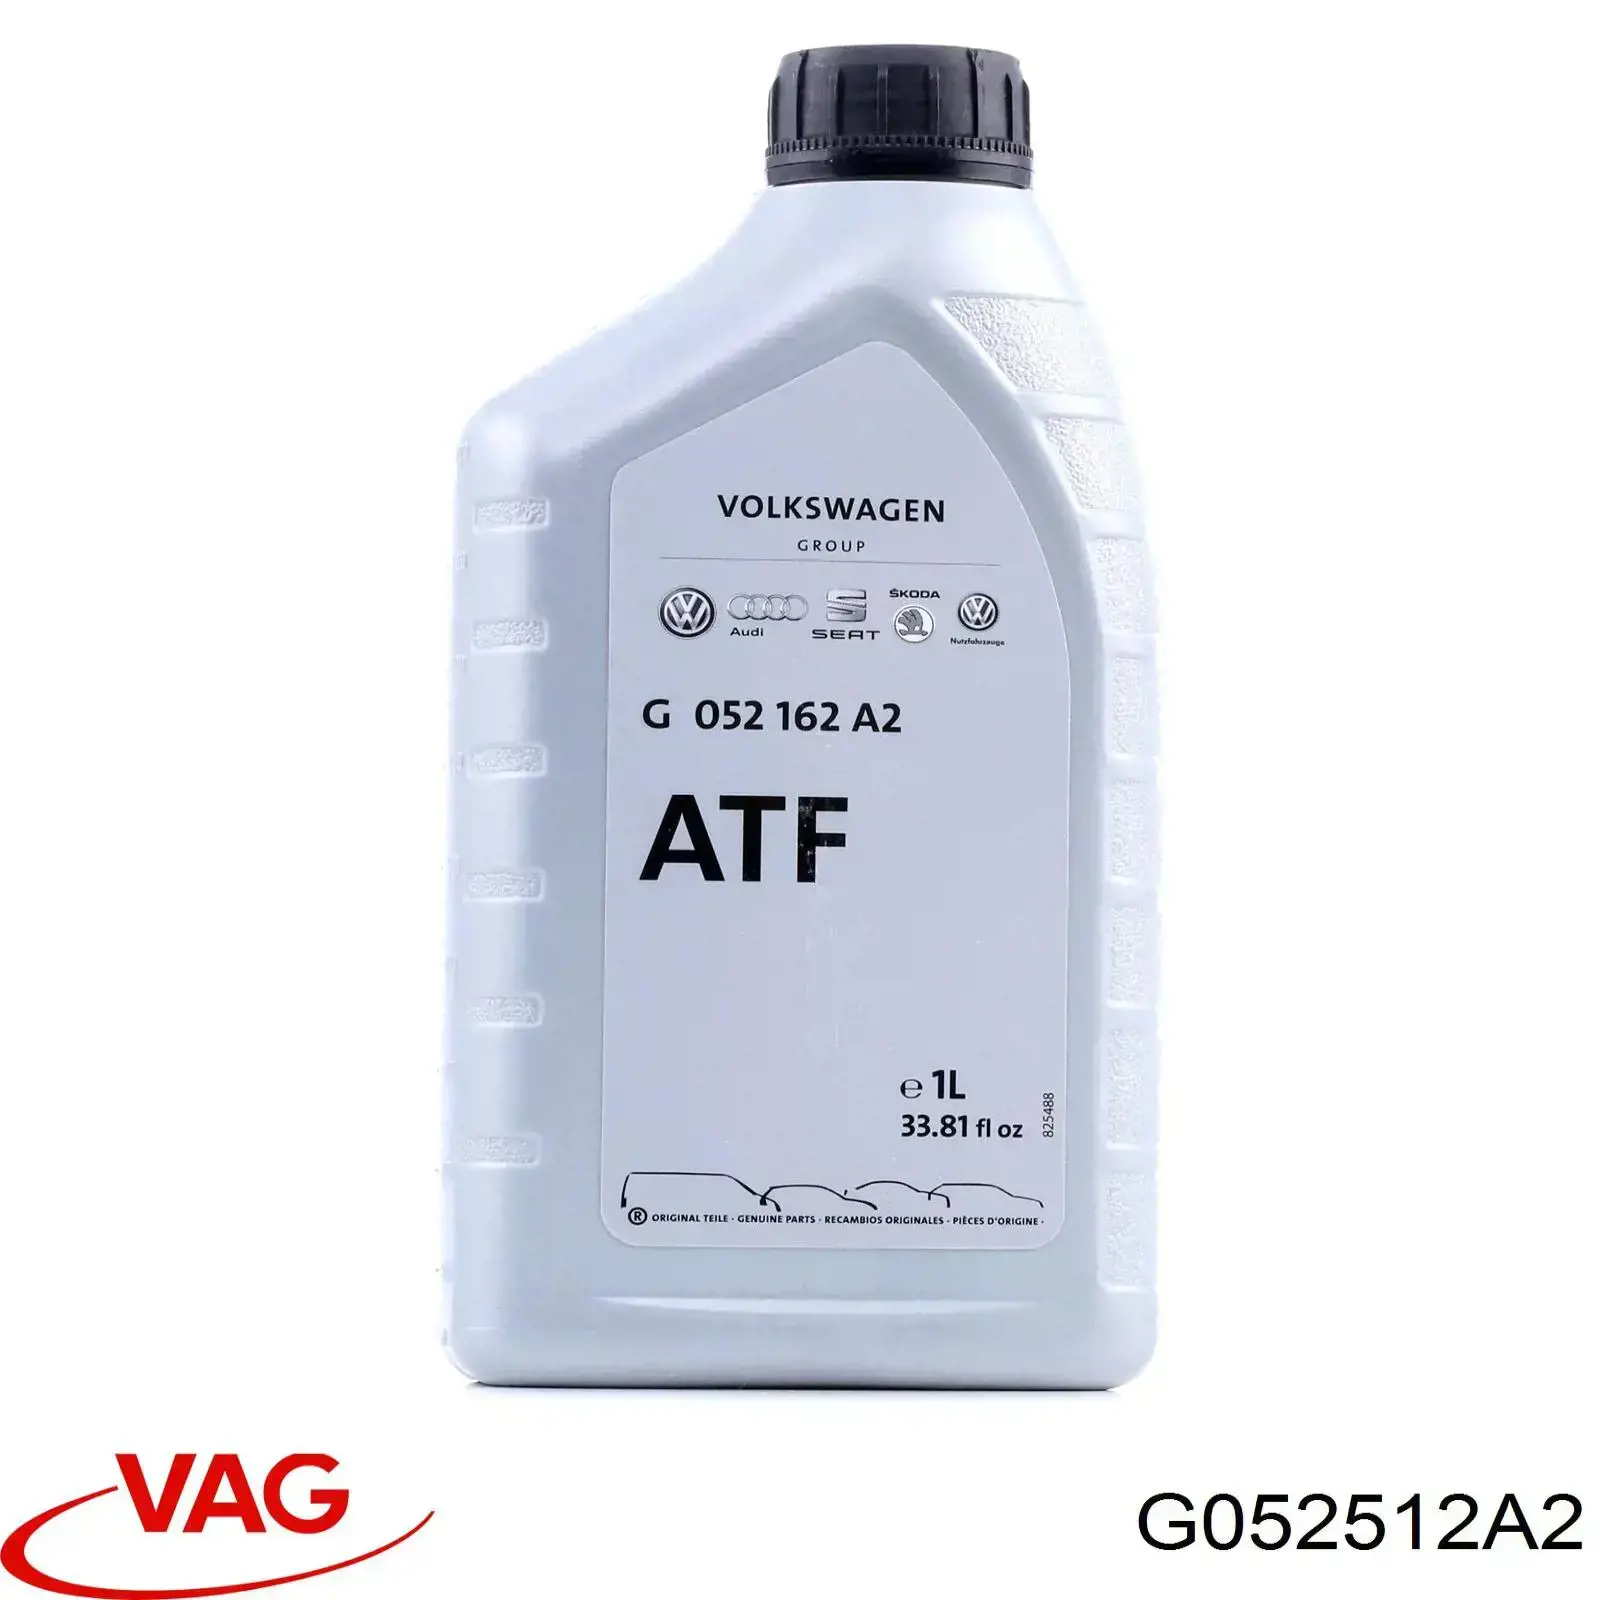 Atf vag. VAG ATF g055025a2. VW G 055 025 a2. G 052 162 a2. G060162a2 VAG масло трансмиссионное для АКПП ATF.